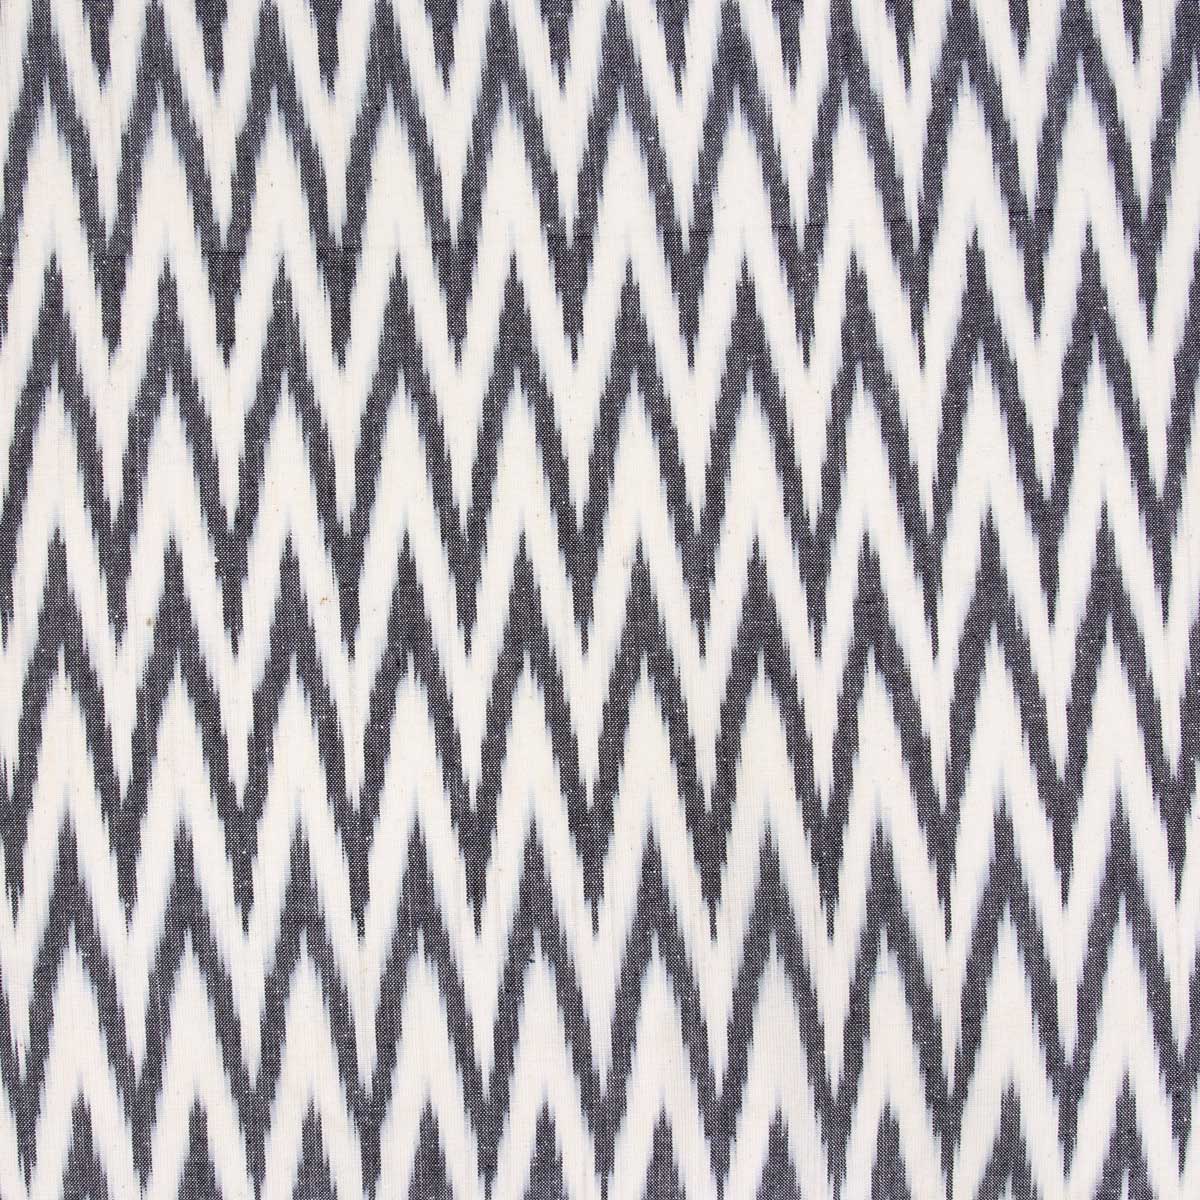 IKAT ZIGZAG Fabric, grey/white